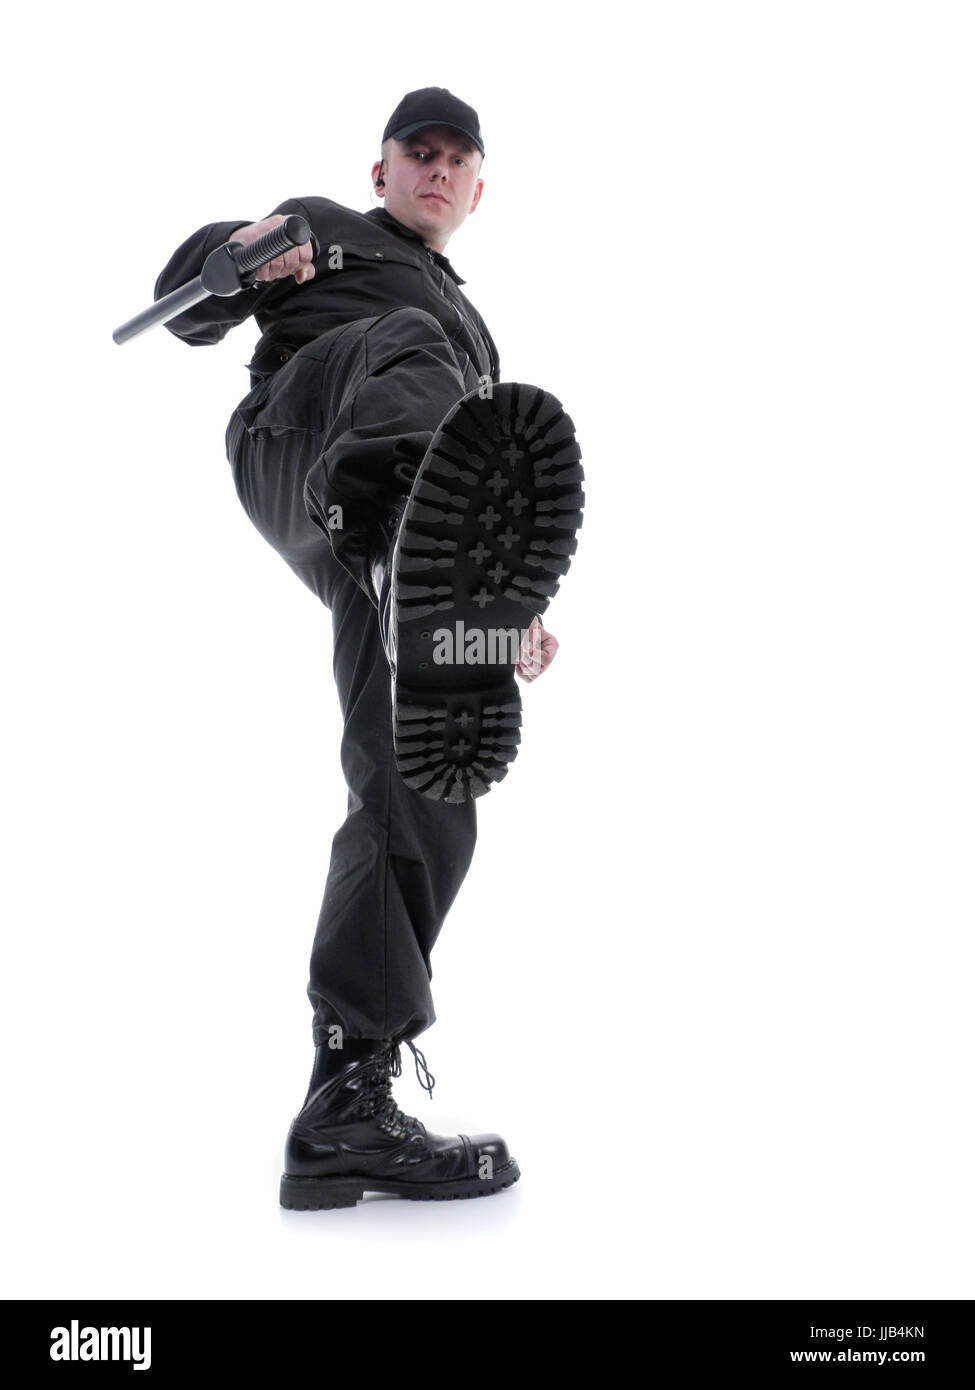 Policier portant uniforme noir faire un kick, shot on white Banque D'Images